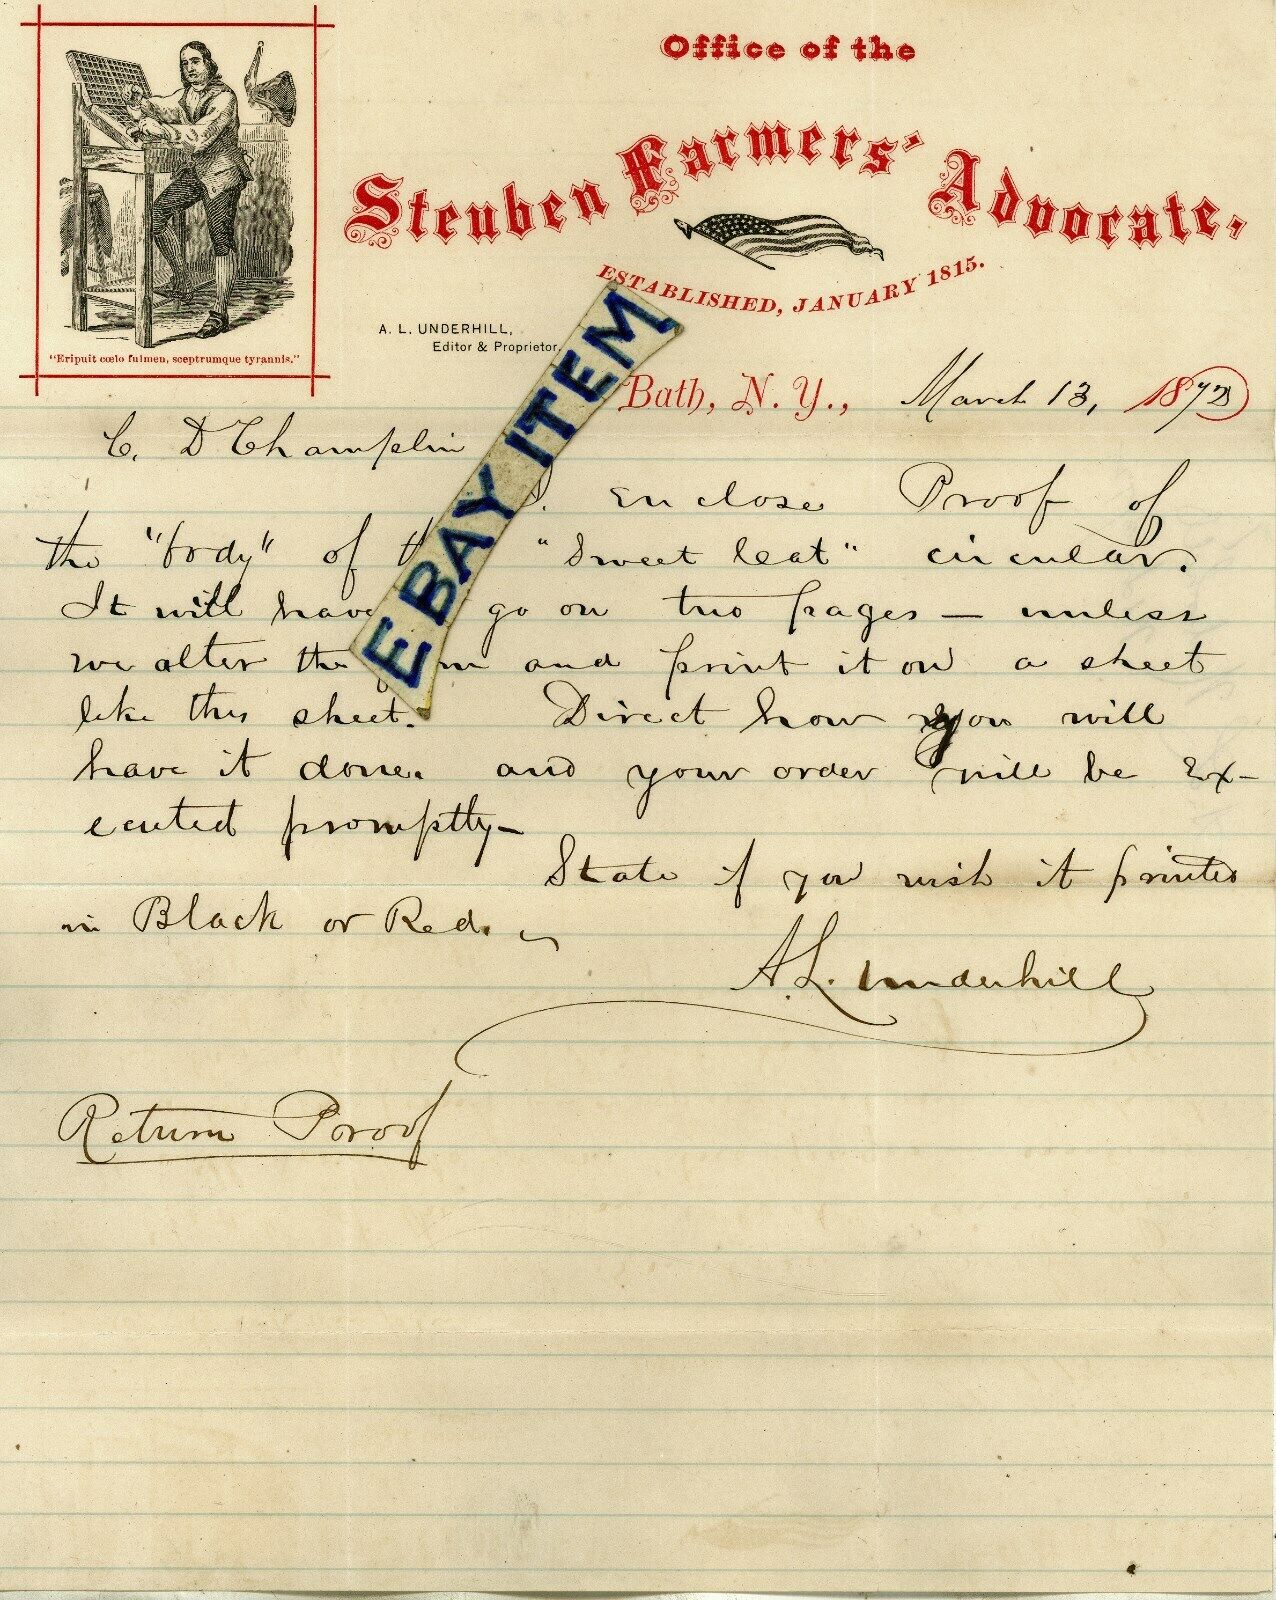 1872 BATH, N.Y. STEUBEN FARMERS ADVOCATE letterhead Anthony. L. UNDERHILL Editor